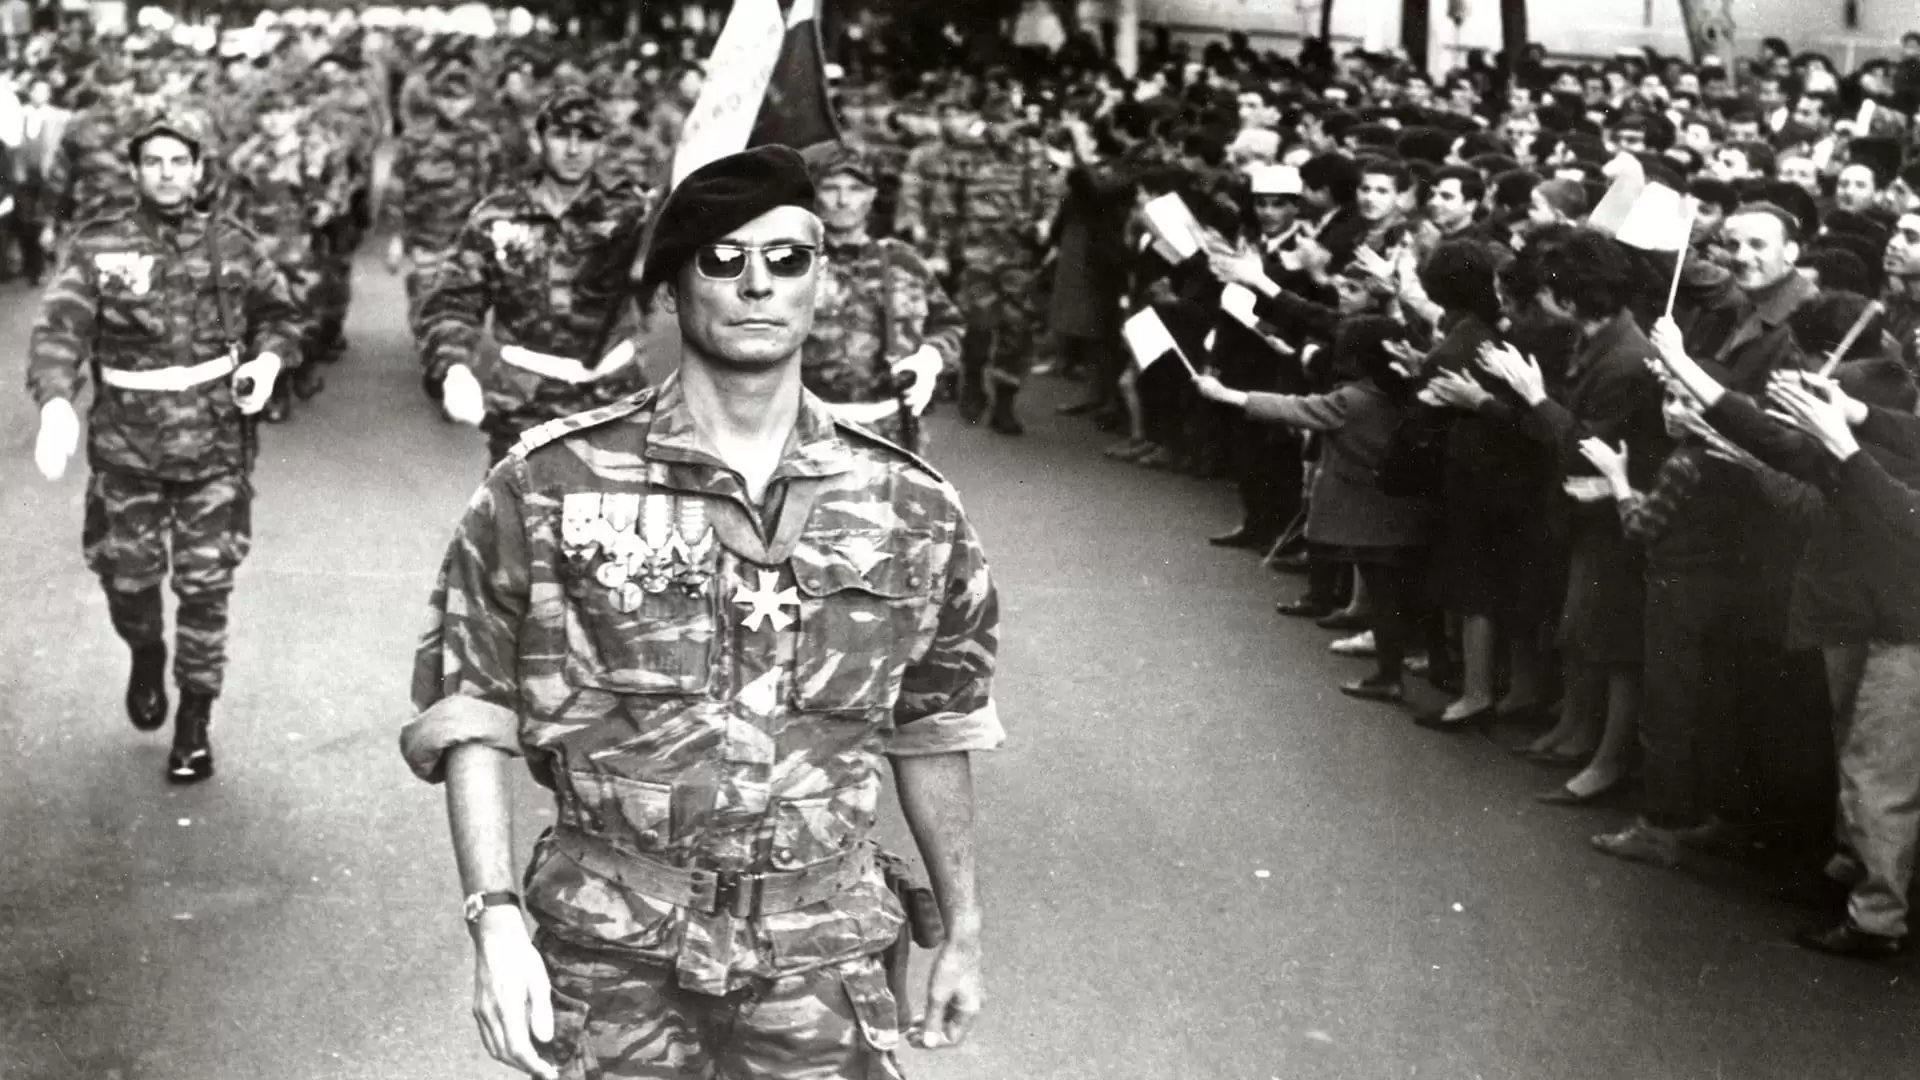 دانلود فیلم The Battle of Algiers 1966 (نبرد الجزیره) با زیرنویس فارسی و تماشای آنلاین